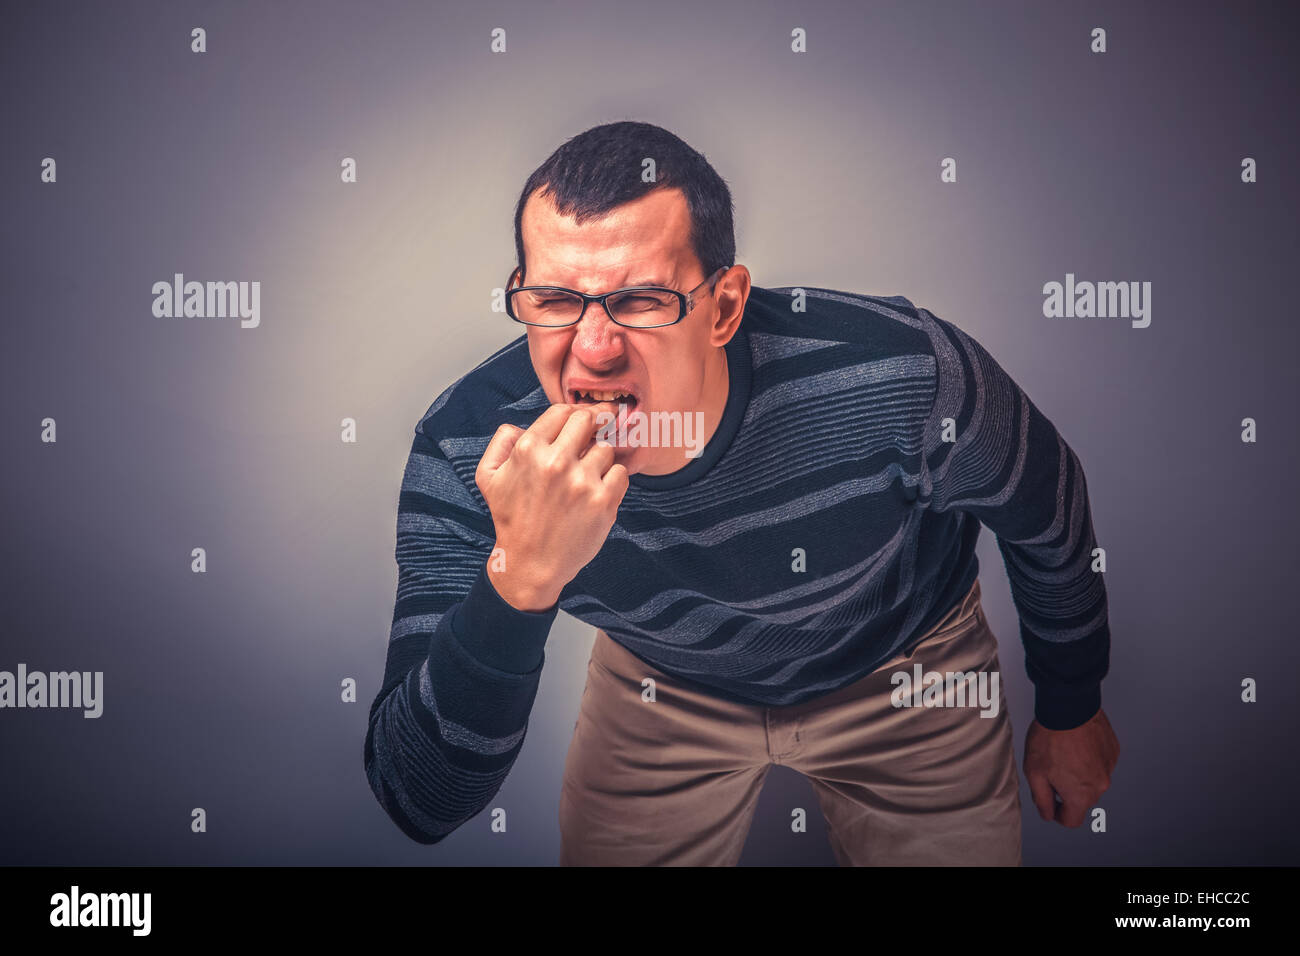 Homme d'apparence brunet mettre ses doigts dans sa bouche Banque D'Images